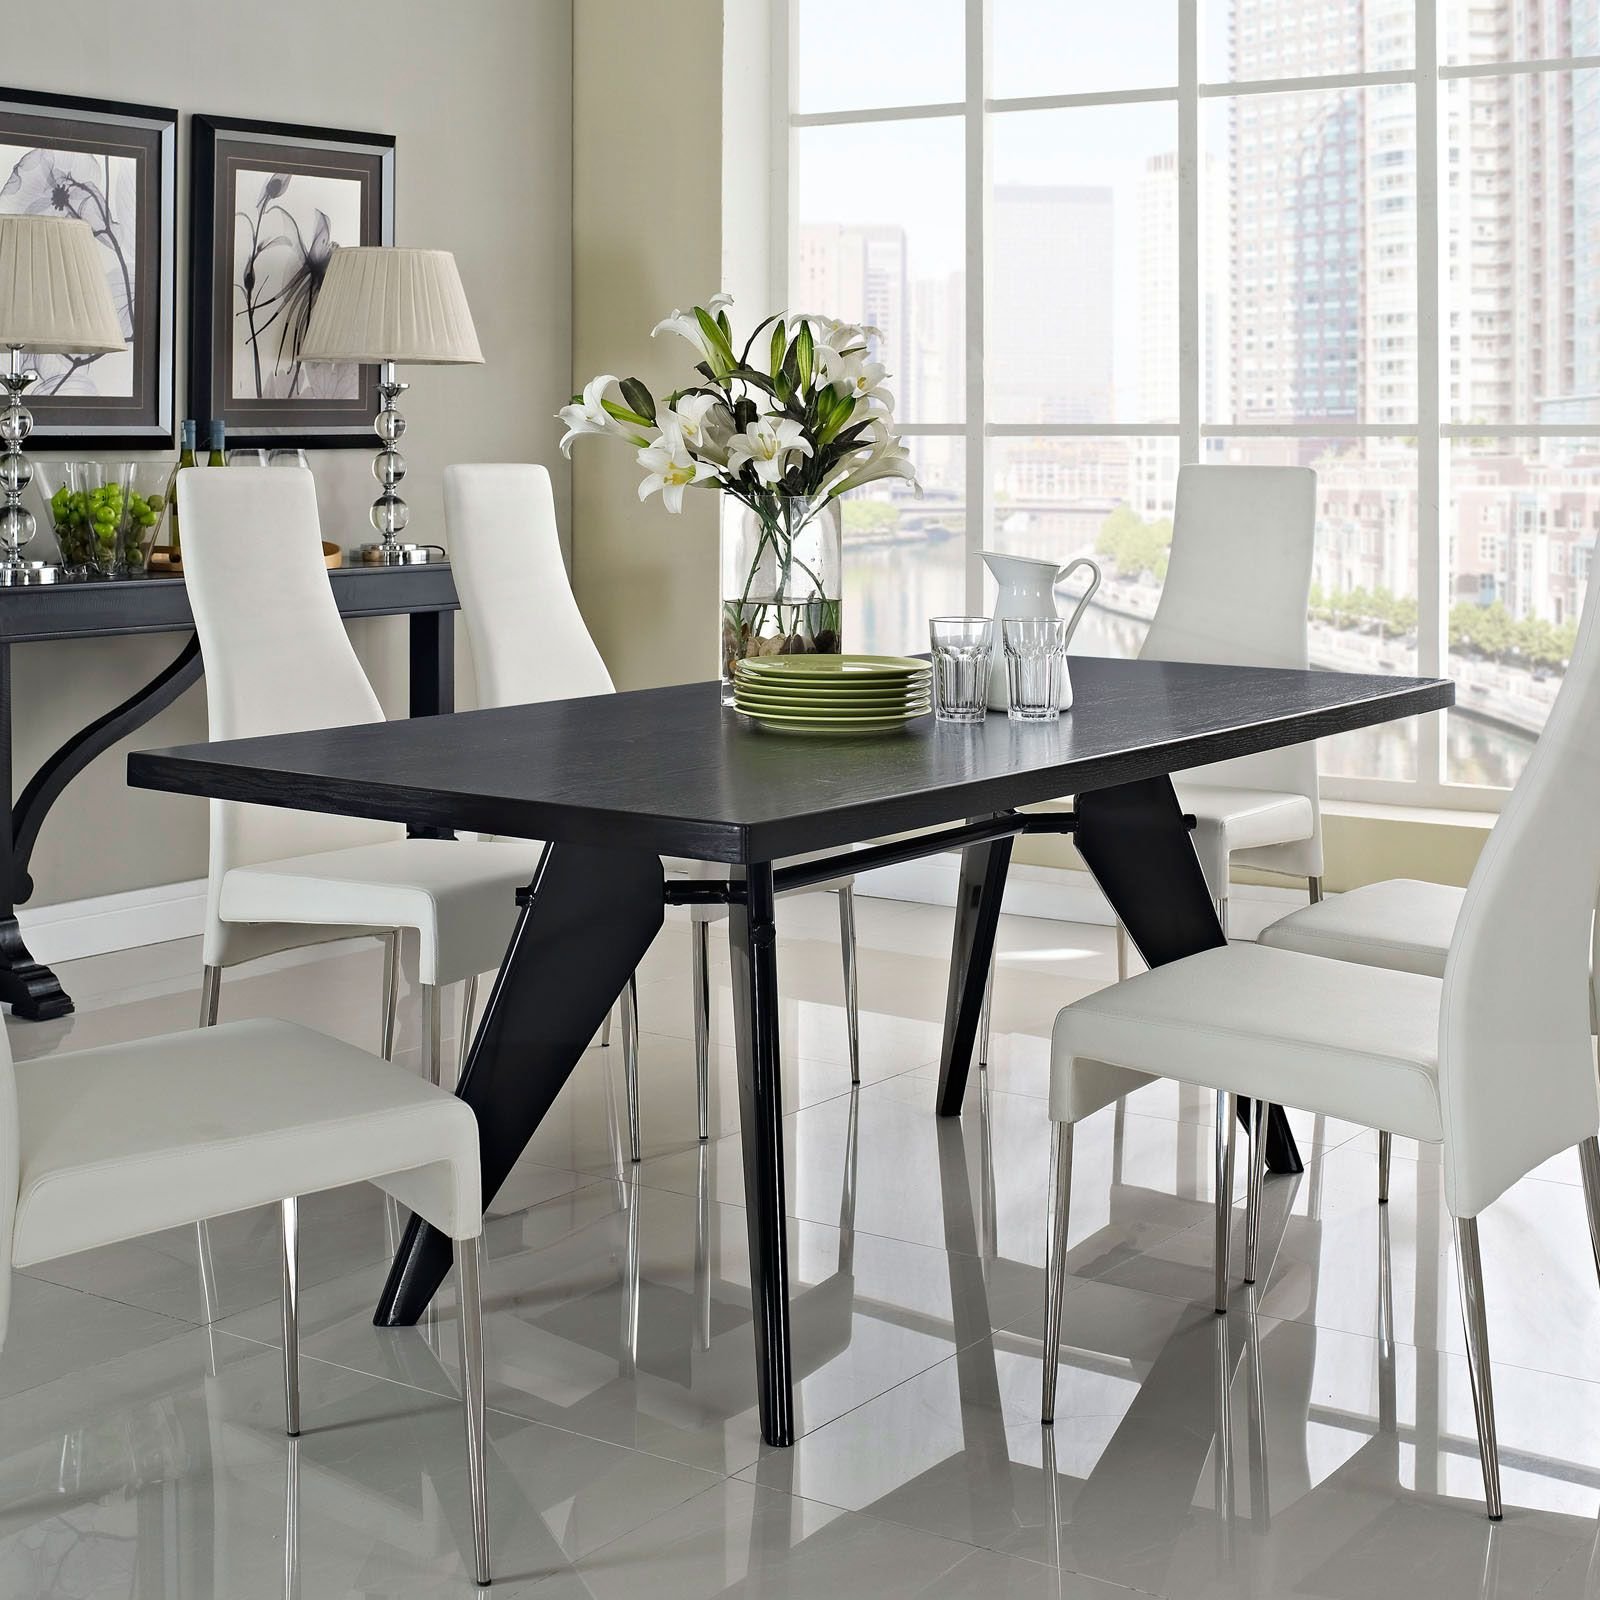 Черный стол на кухне. Стол фирма JYSK Toledo Dining Table Grey Antique. Стол обеденный Winston Sandro Veneer 63. Обеденный стол в интерьере. Белый обеденный стол в интерьере.